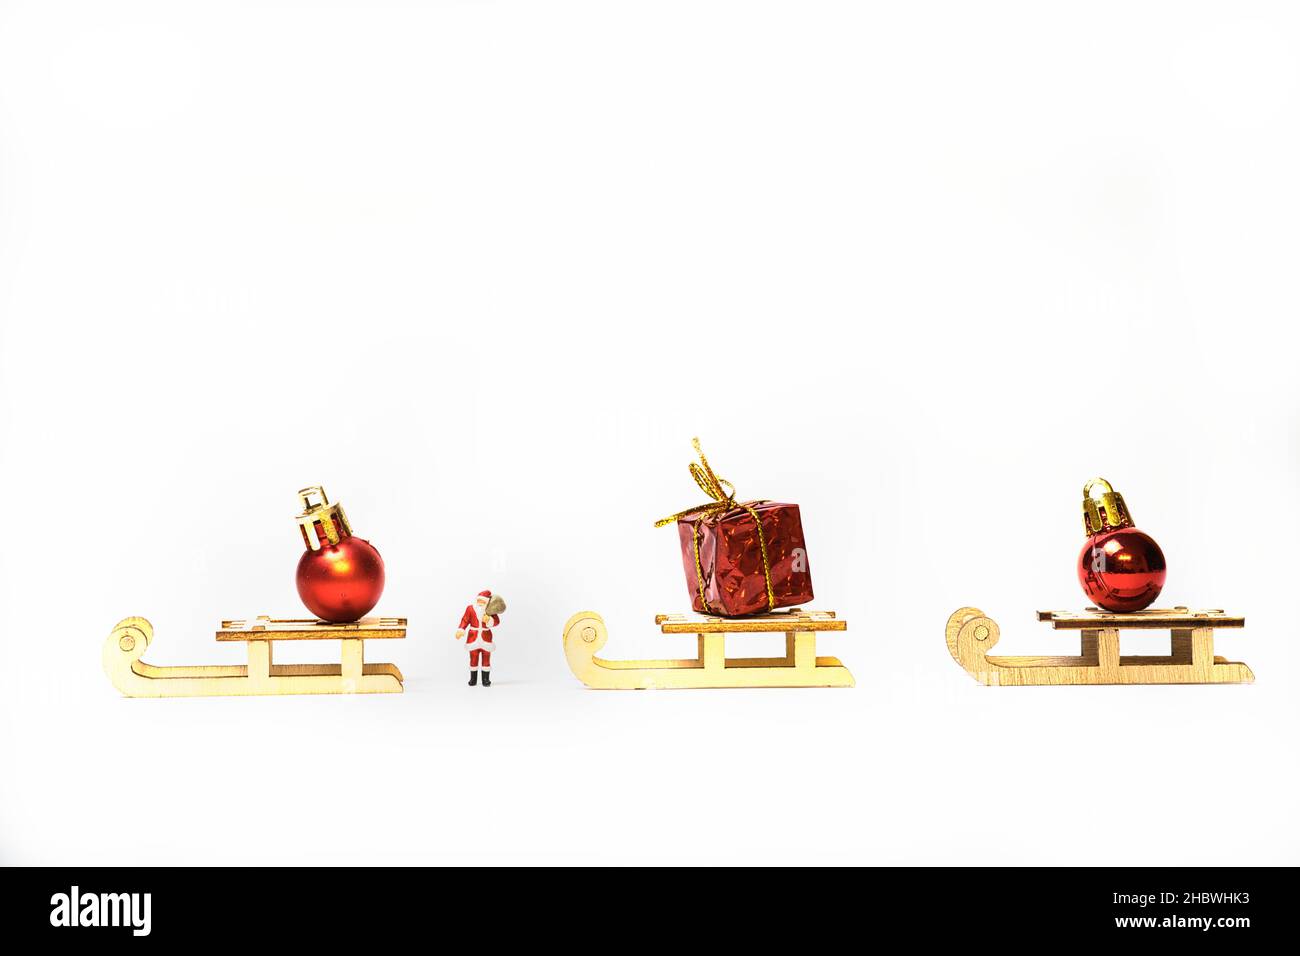 Ein Miniatur-Weihnachtsmann zwischen Schlitten mit Geschenkpaketen und Weihnachtsbaumkugeln Stockfoto